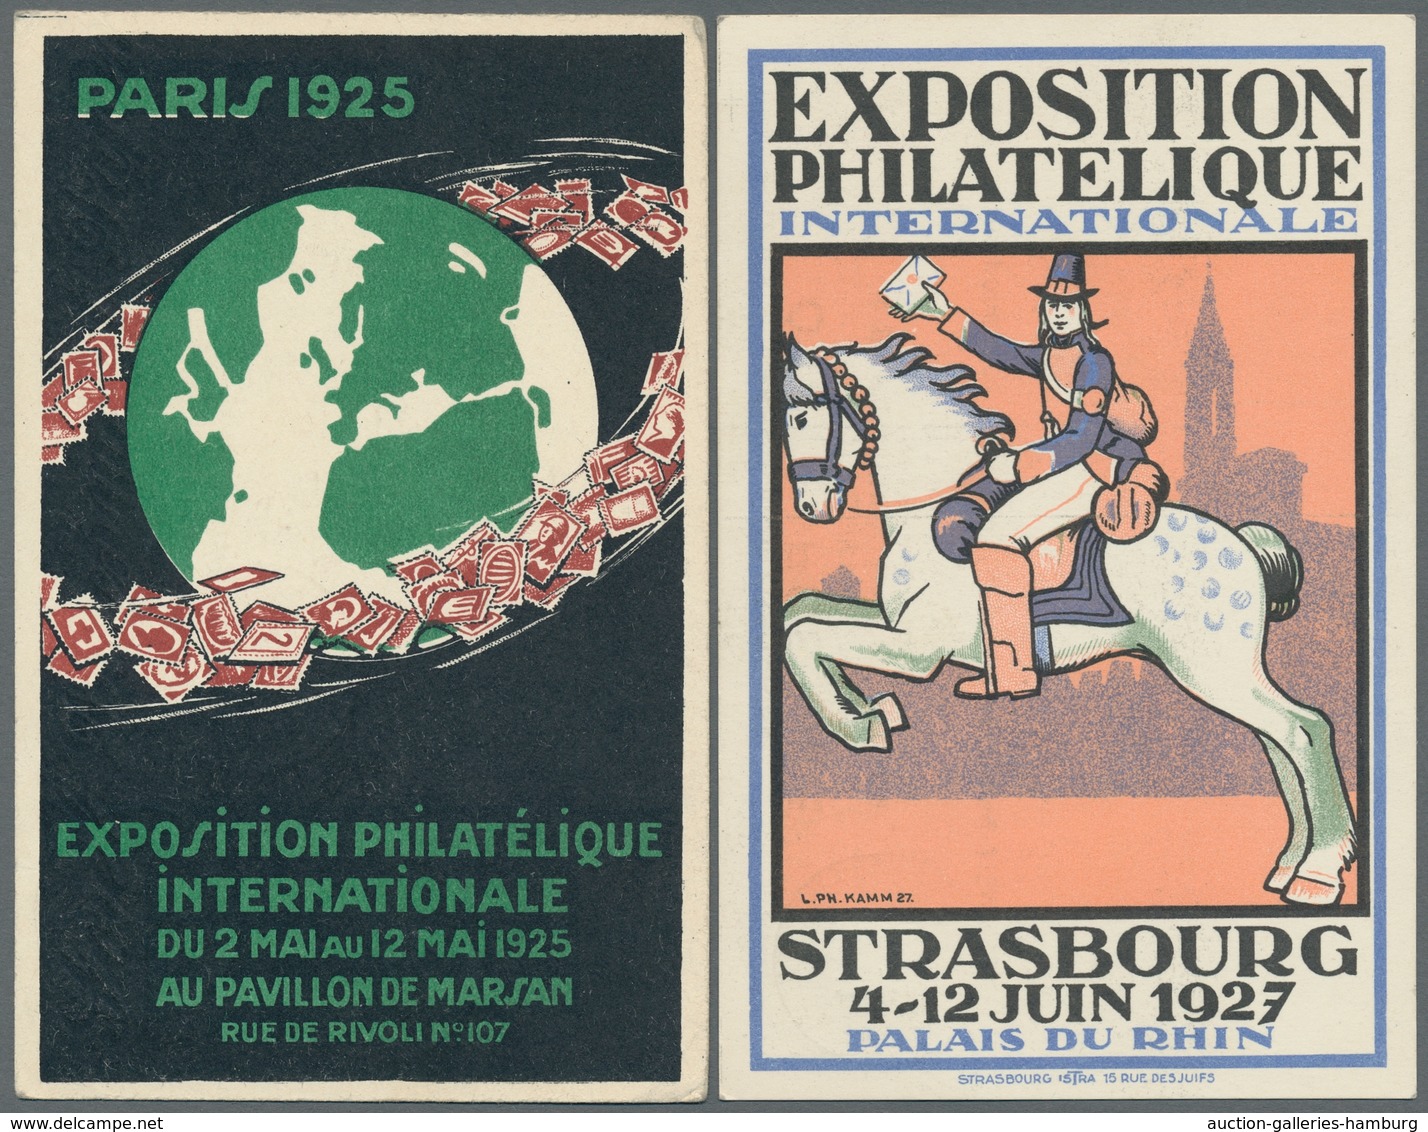 Frankreich: 1925-1947, Partie von 28 Belegen mit Stempeln von verschiedenen Briefmarkenausstellungen